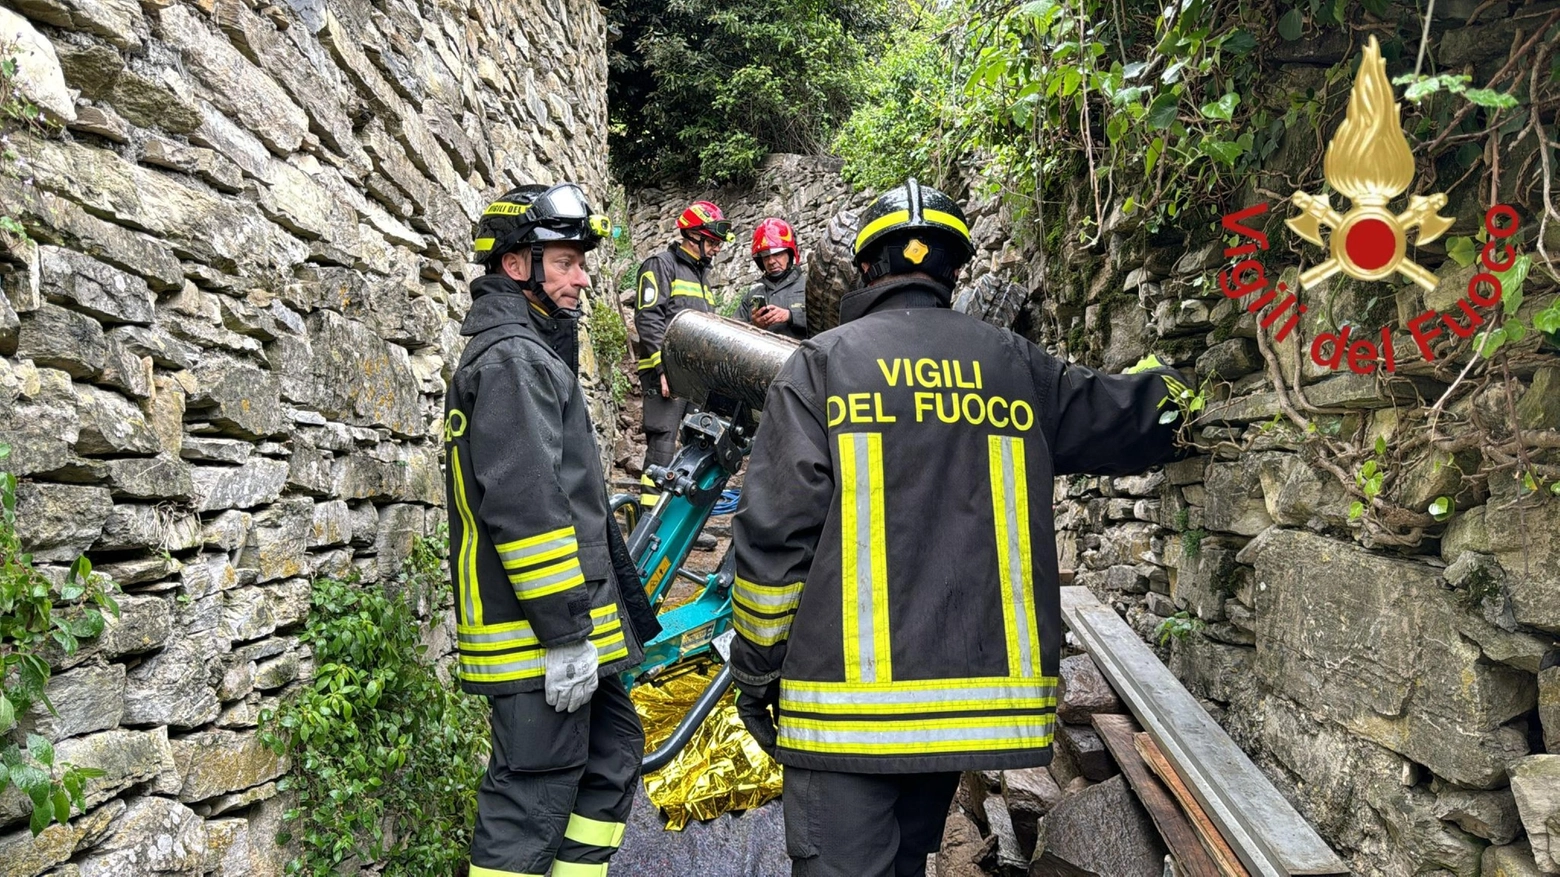 La tragedia è avvenuta durante le operazioni di sbancamento in un cantiere nella zona a monte del paese. Vittima Carlo Lenatti di Montagna in Valtellina